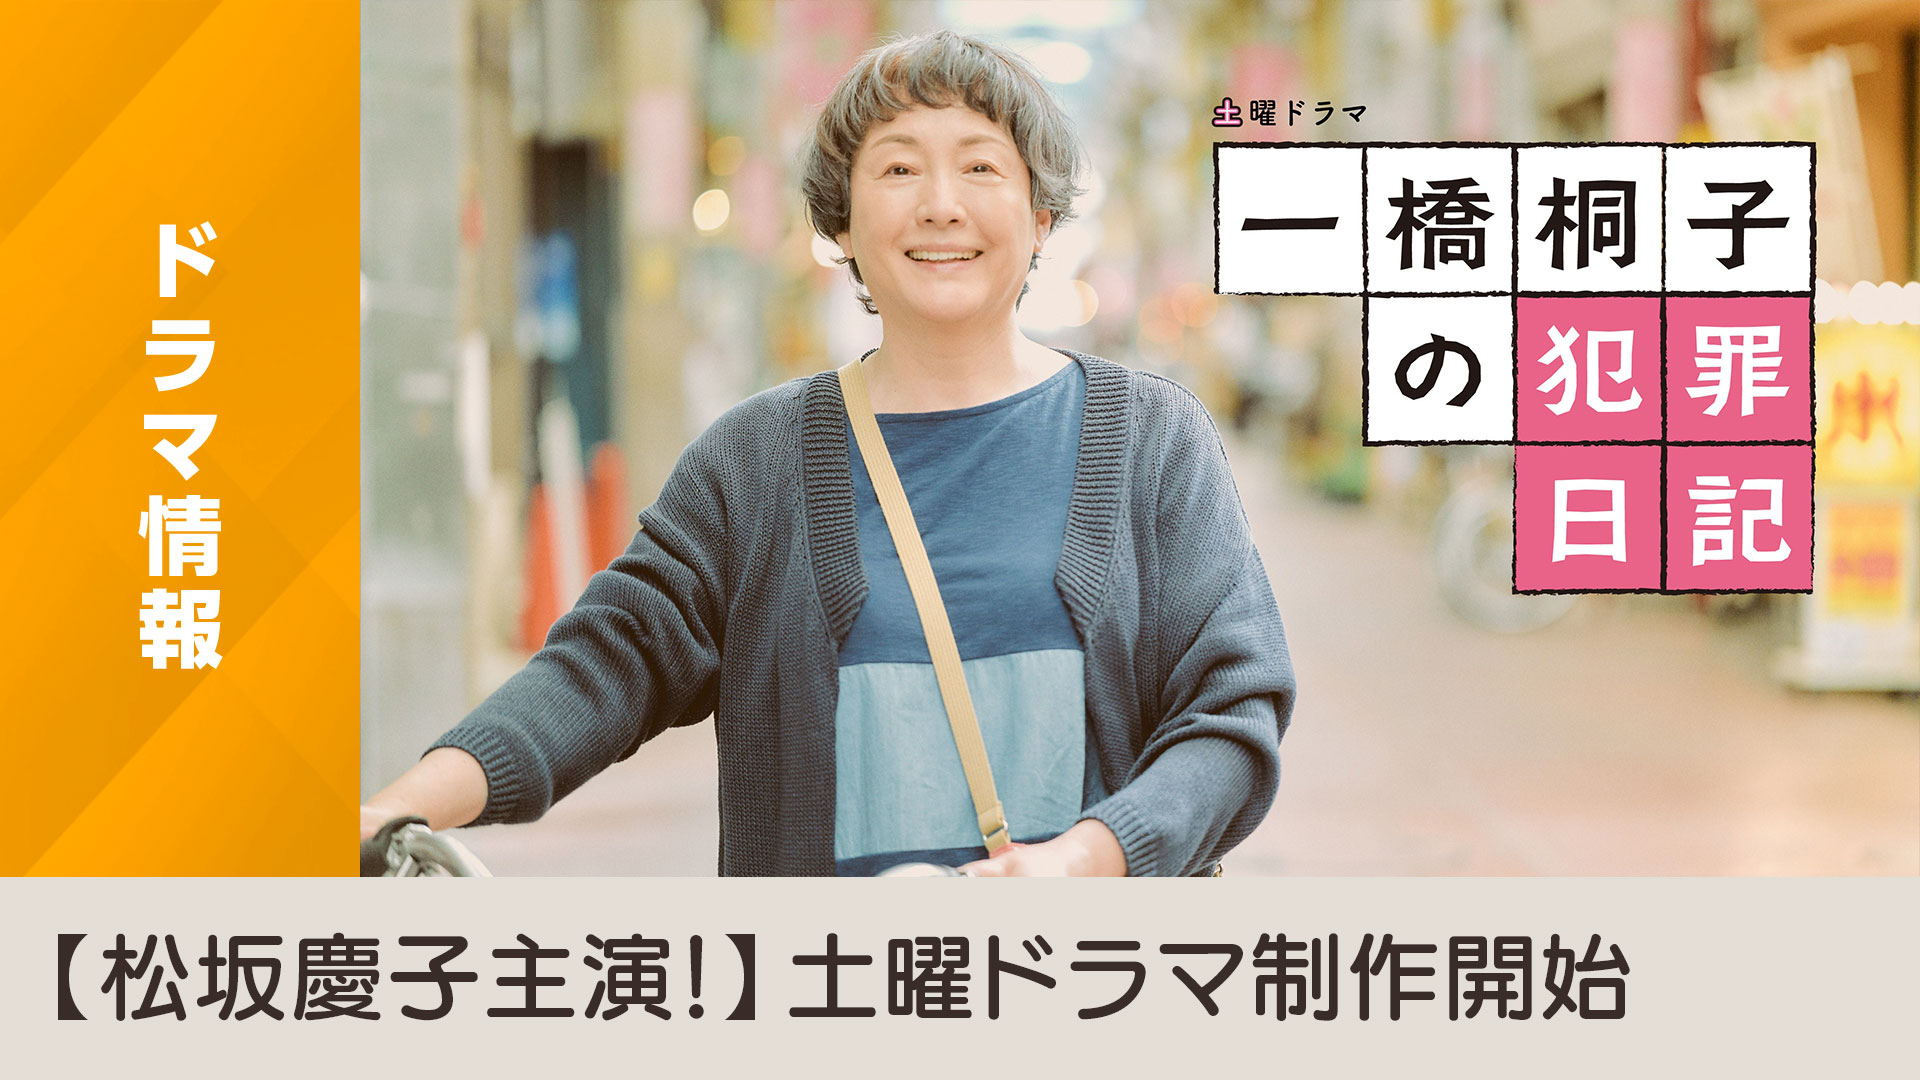 土曜ドラマ「一橋桐子の犯罪日記」制作開始のお知らせ - NHK